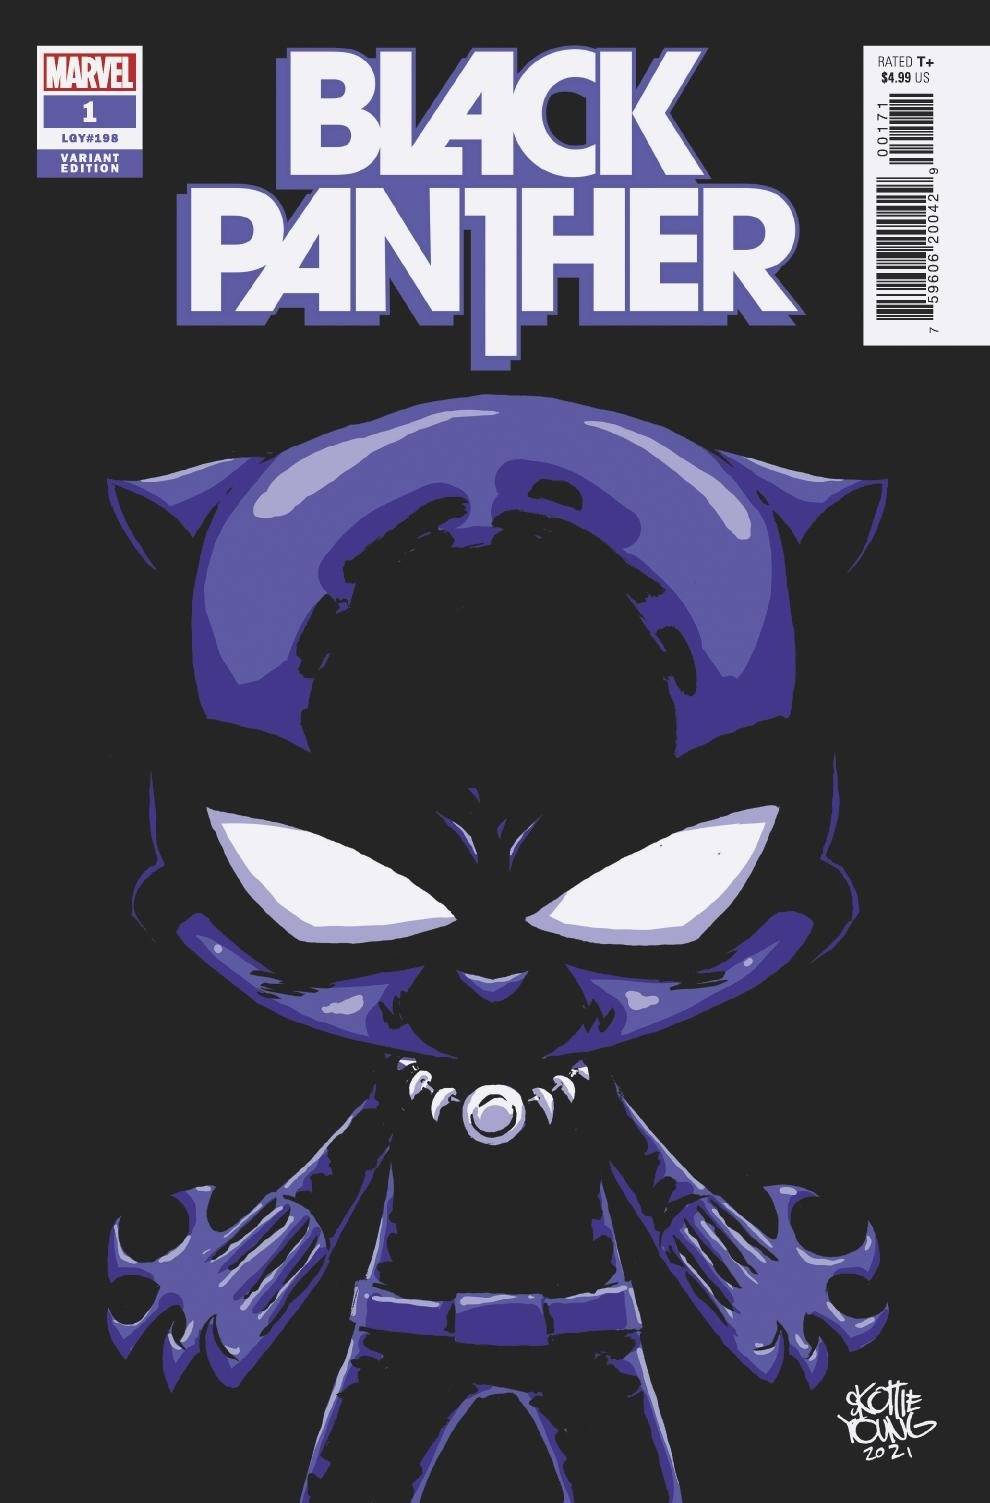 BLACK PANTHER #1 YOUNG VAR - 2 Geeks Comics